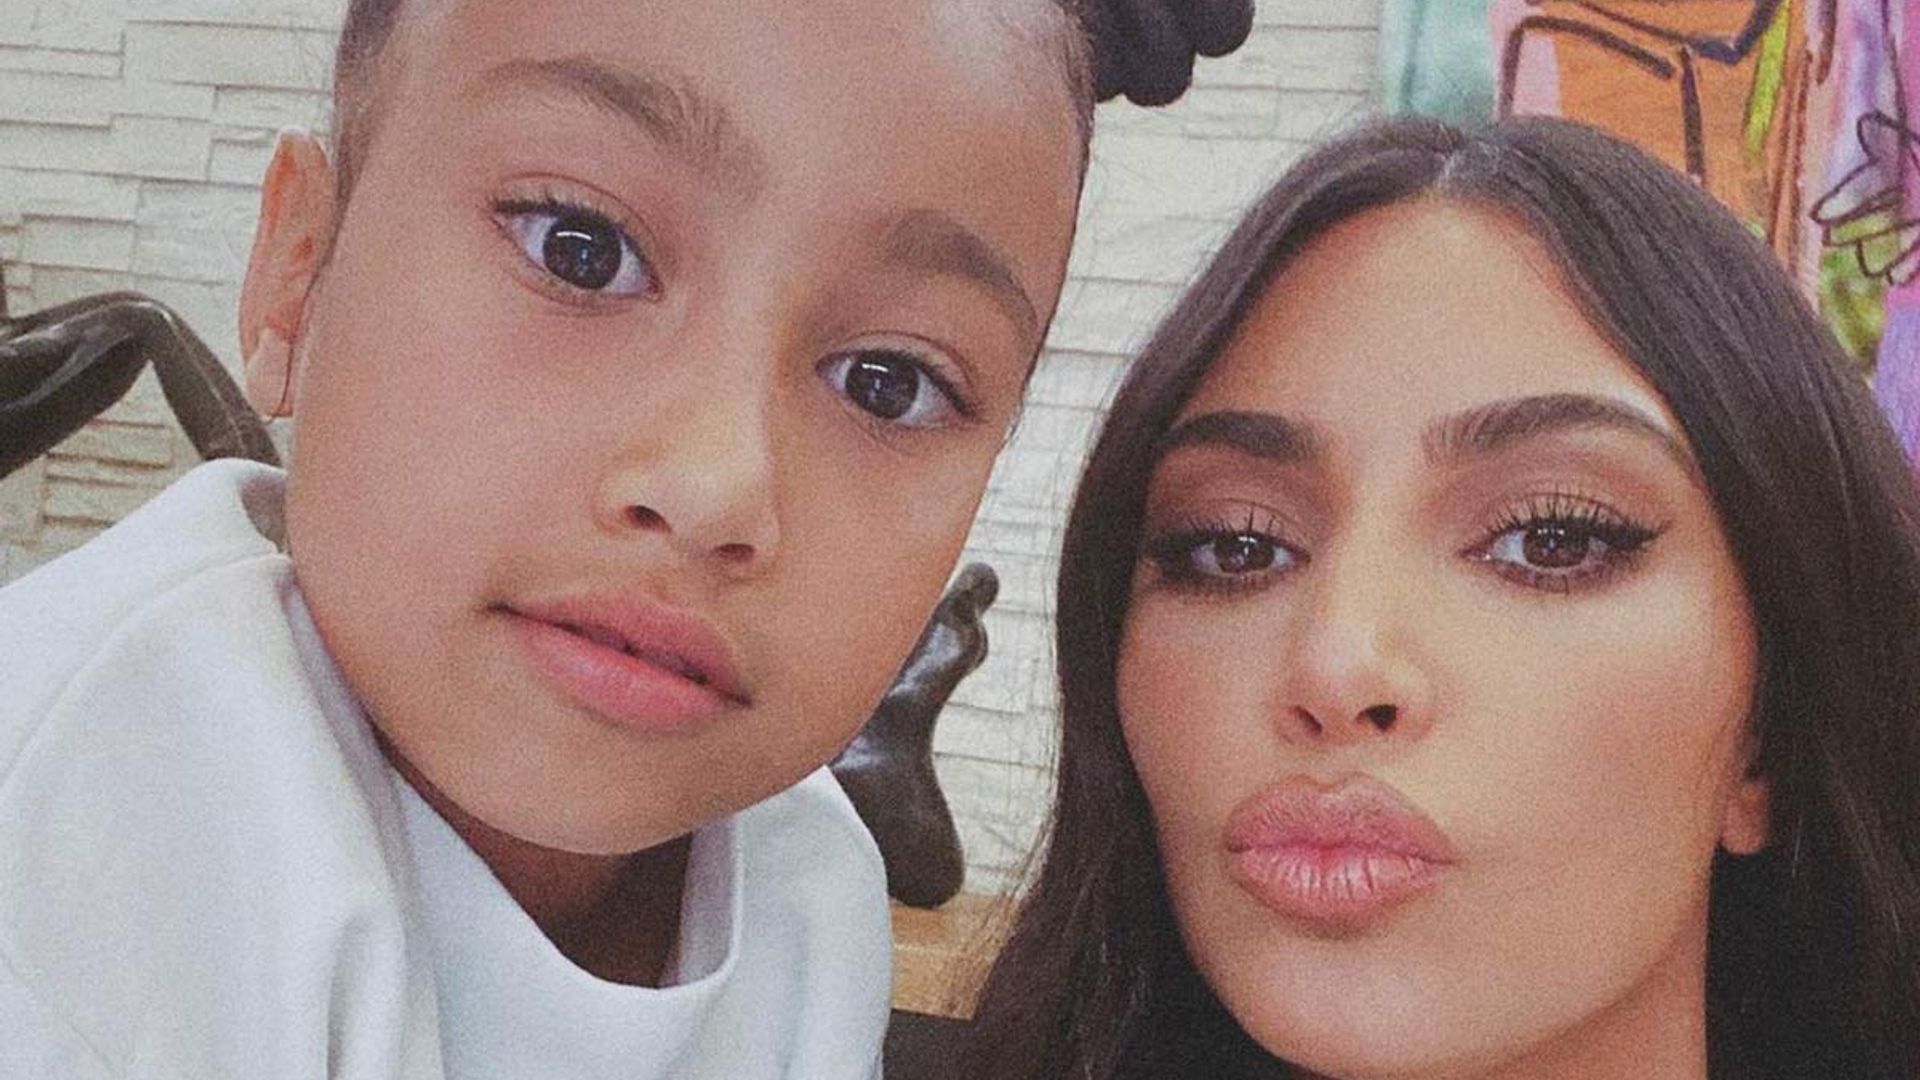 Kim Kardashian shares adorable family photo with children to mark